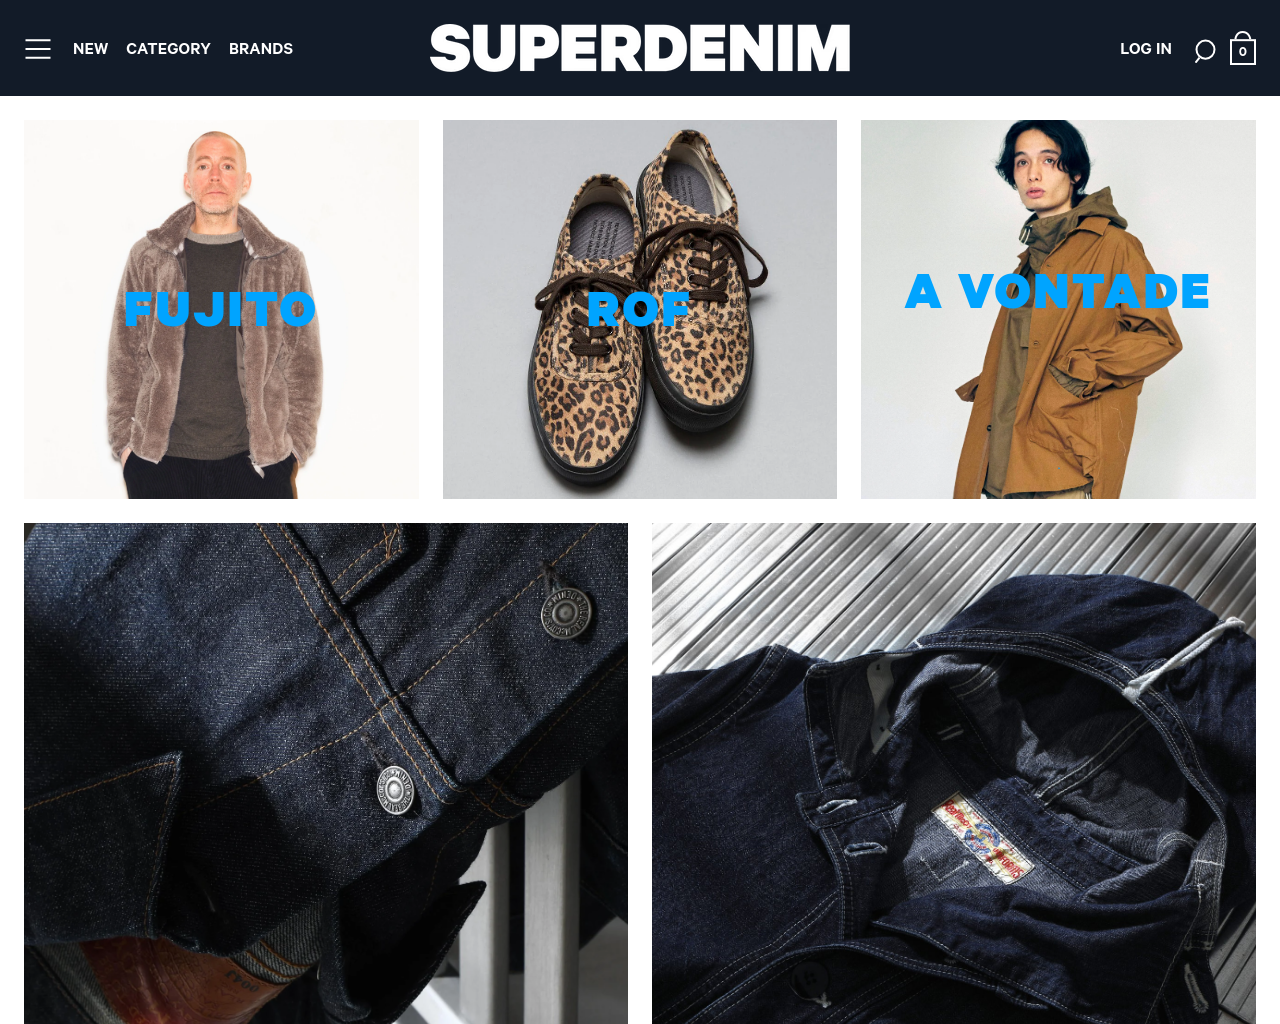 superdenim.com